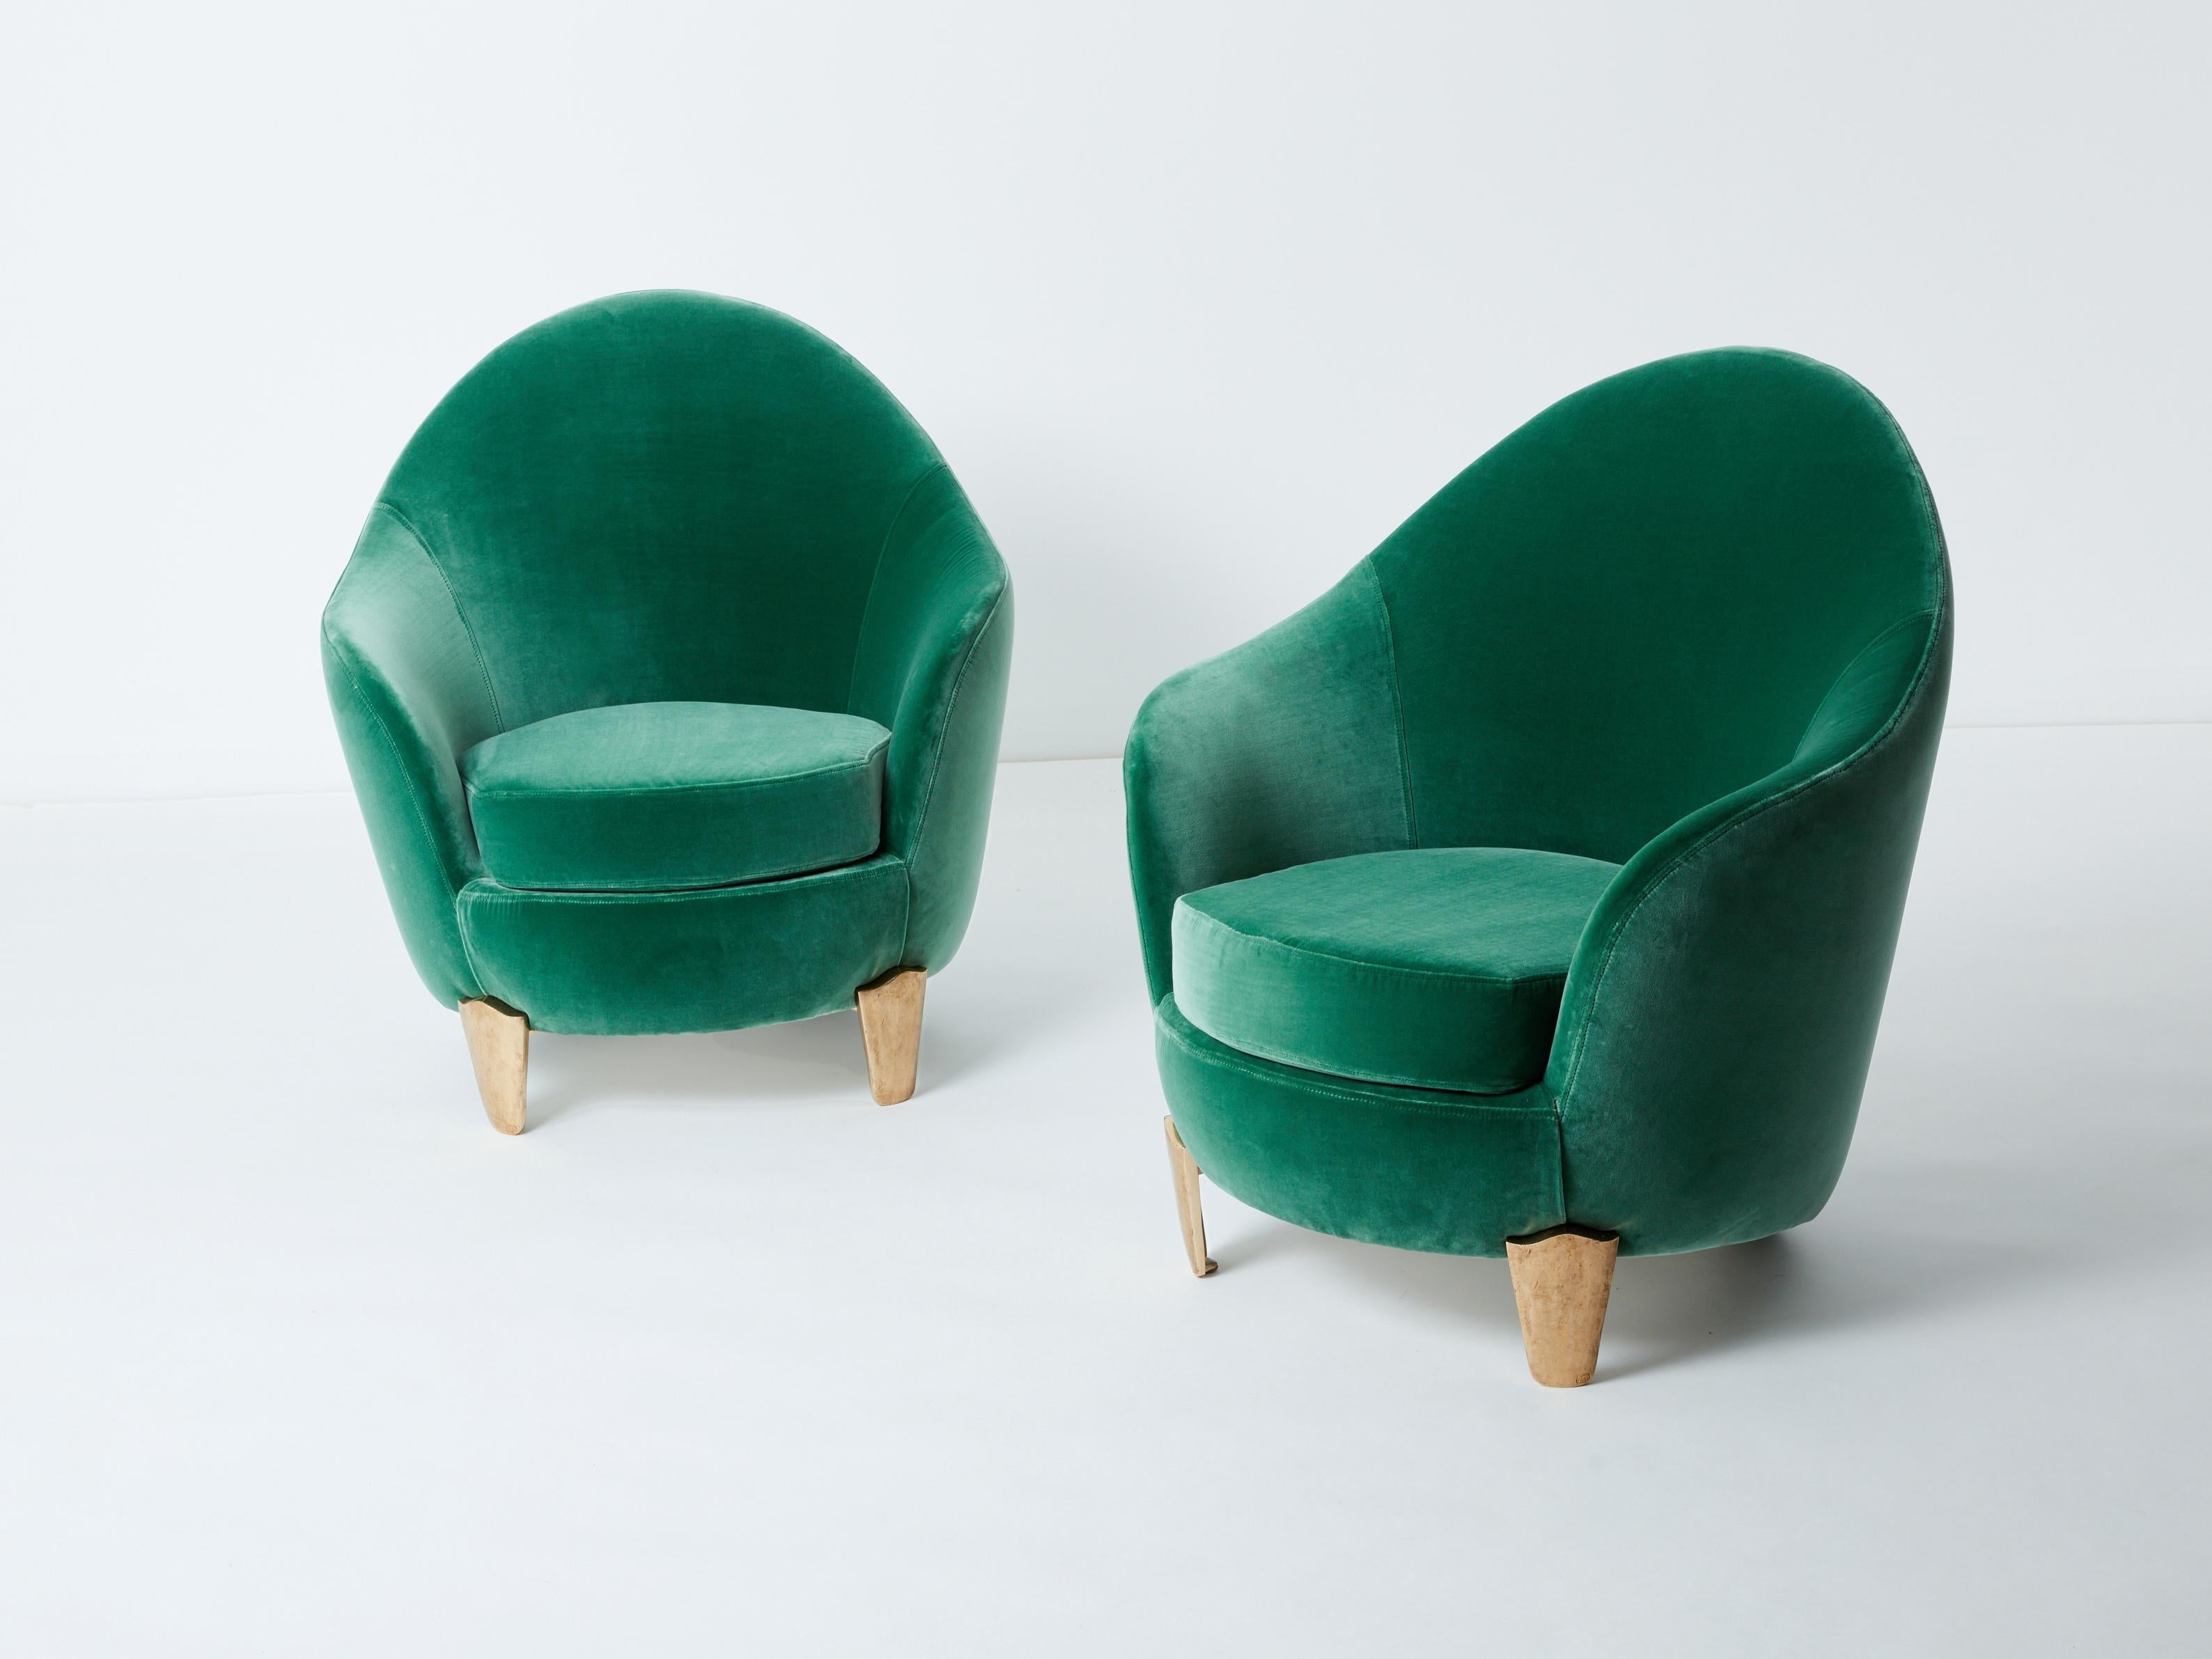 Voici une magnifique paire de fauteuils d'Elizabeth Garouste & Mattia Bonetti, modèle Koala, avec des pieds en bronze massif, entièrement restaurés et retapissés. Garouste & Bonetti ont commencé leur Collaboration et ont acquis une reconnaissance